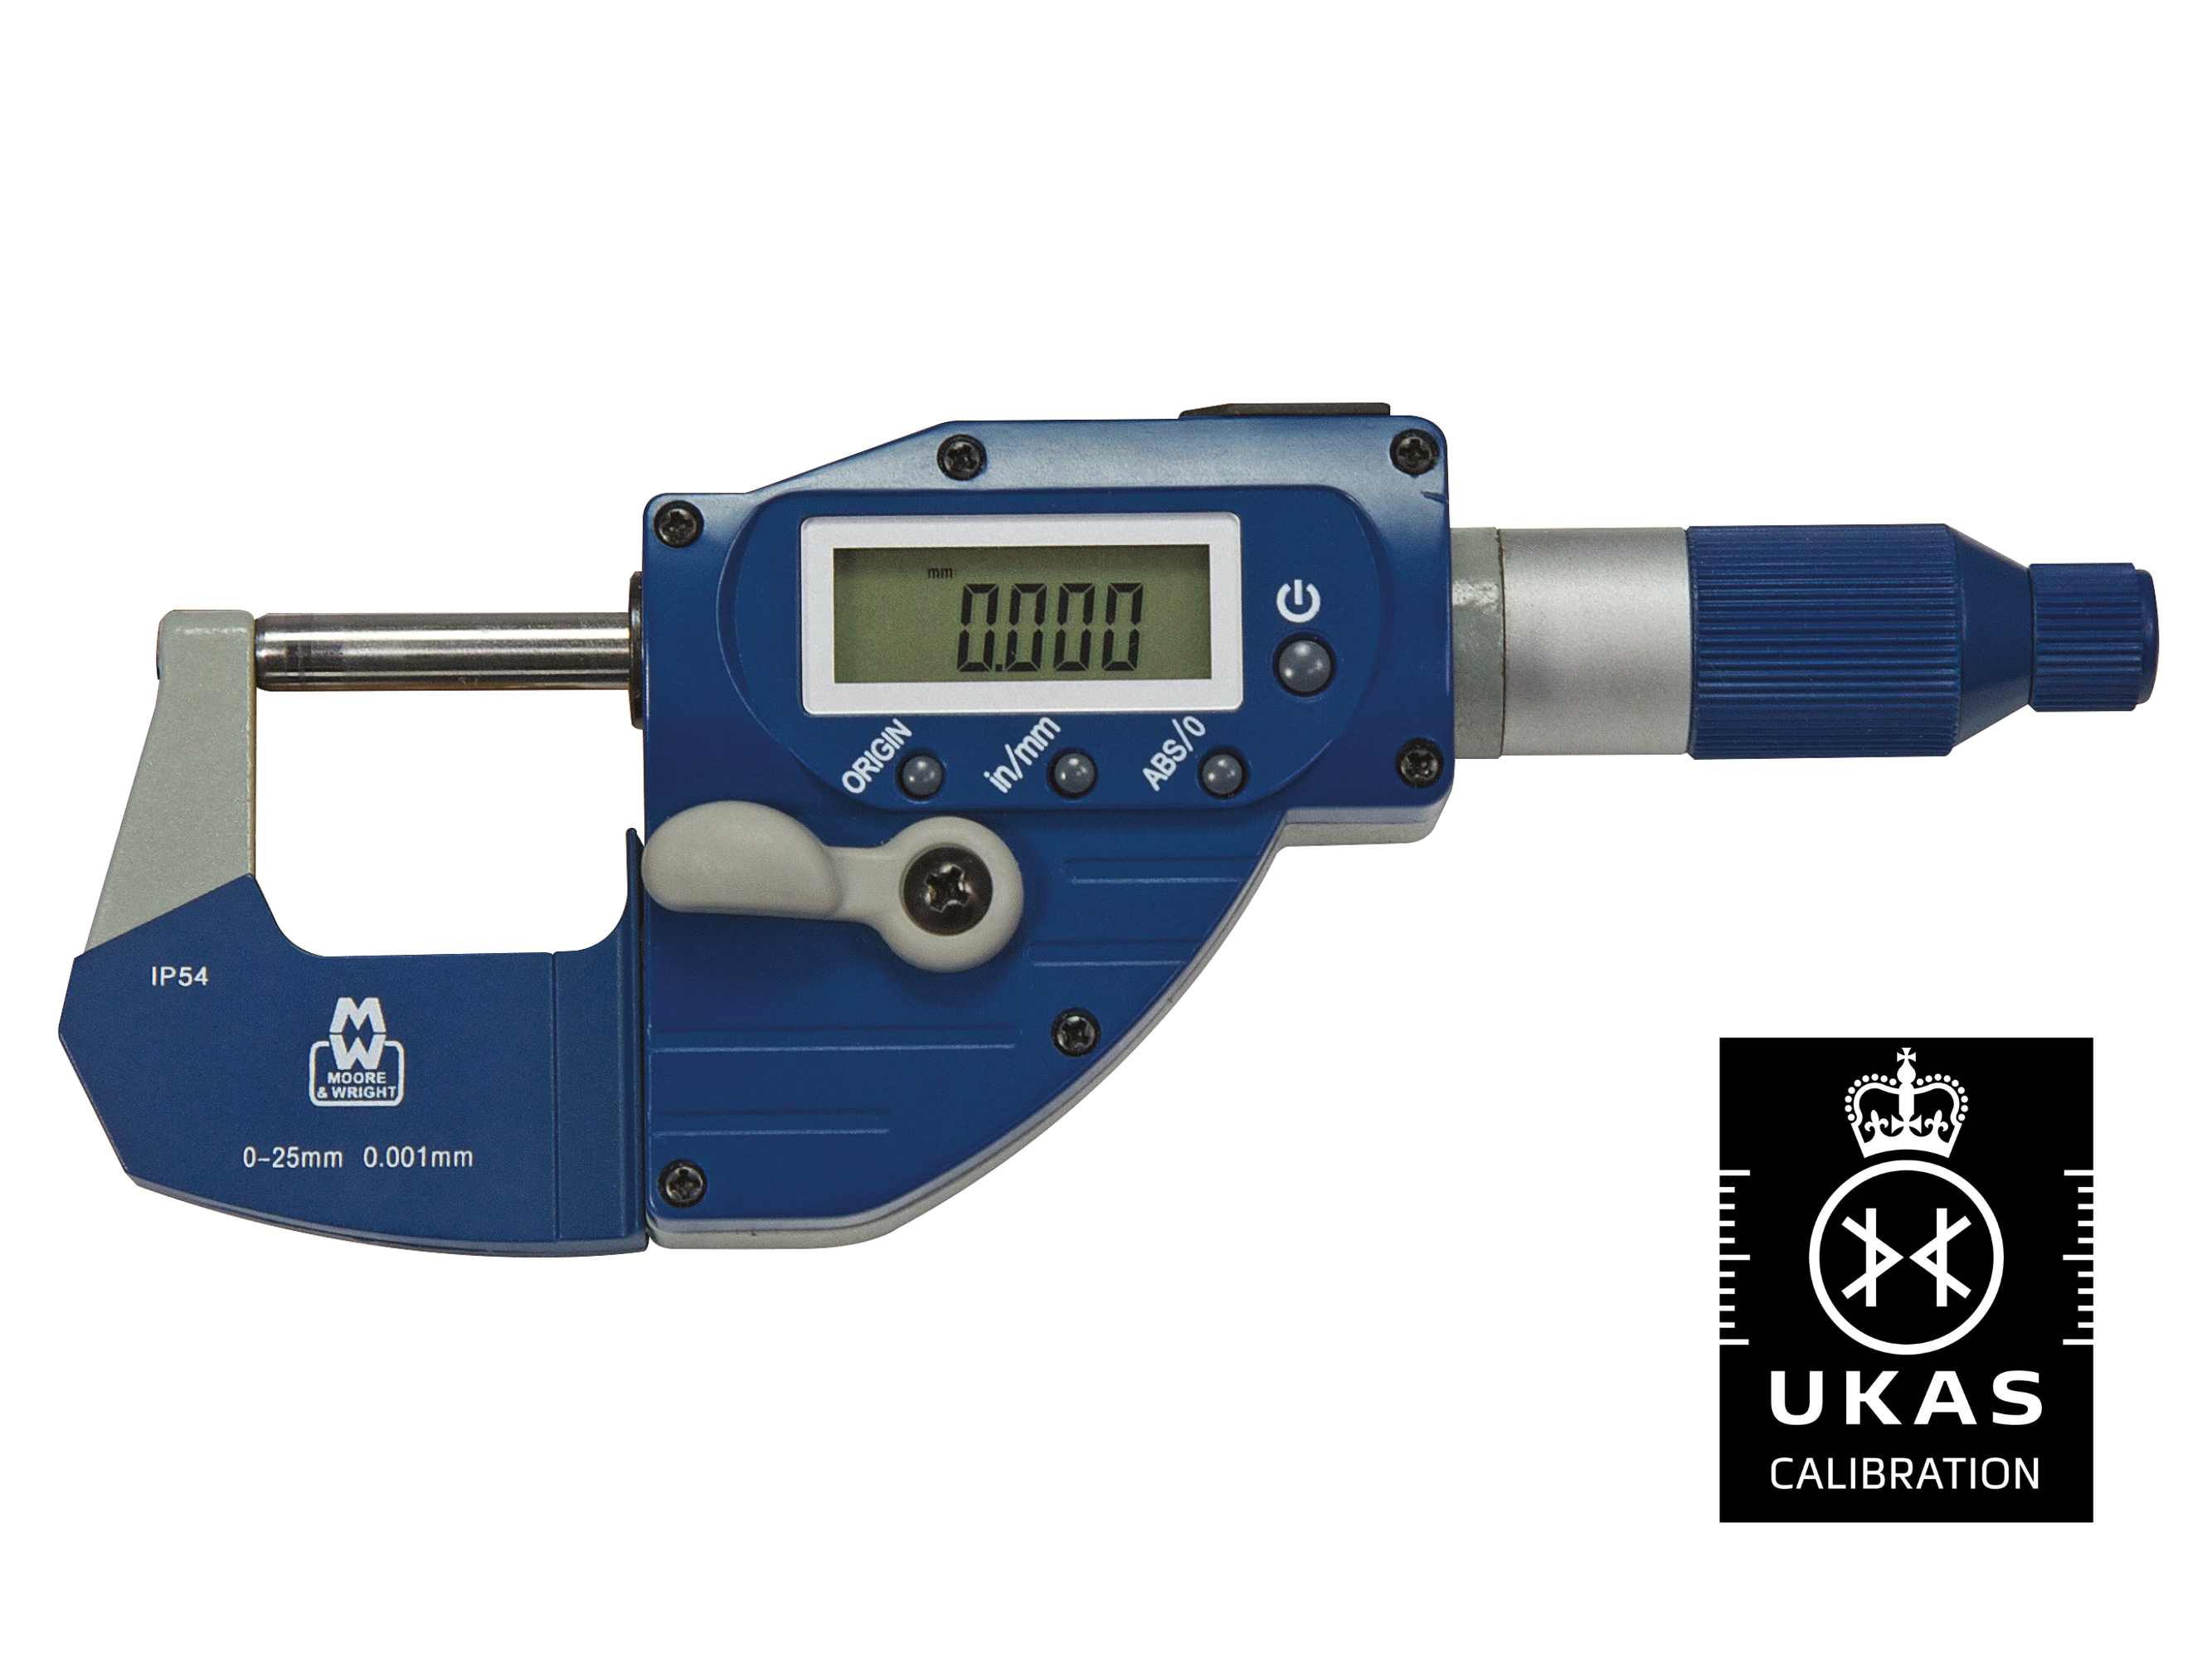 Absolute Digital Snap Micrometer 75-100mm 0.001mm